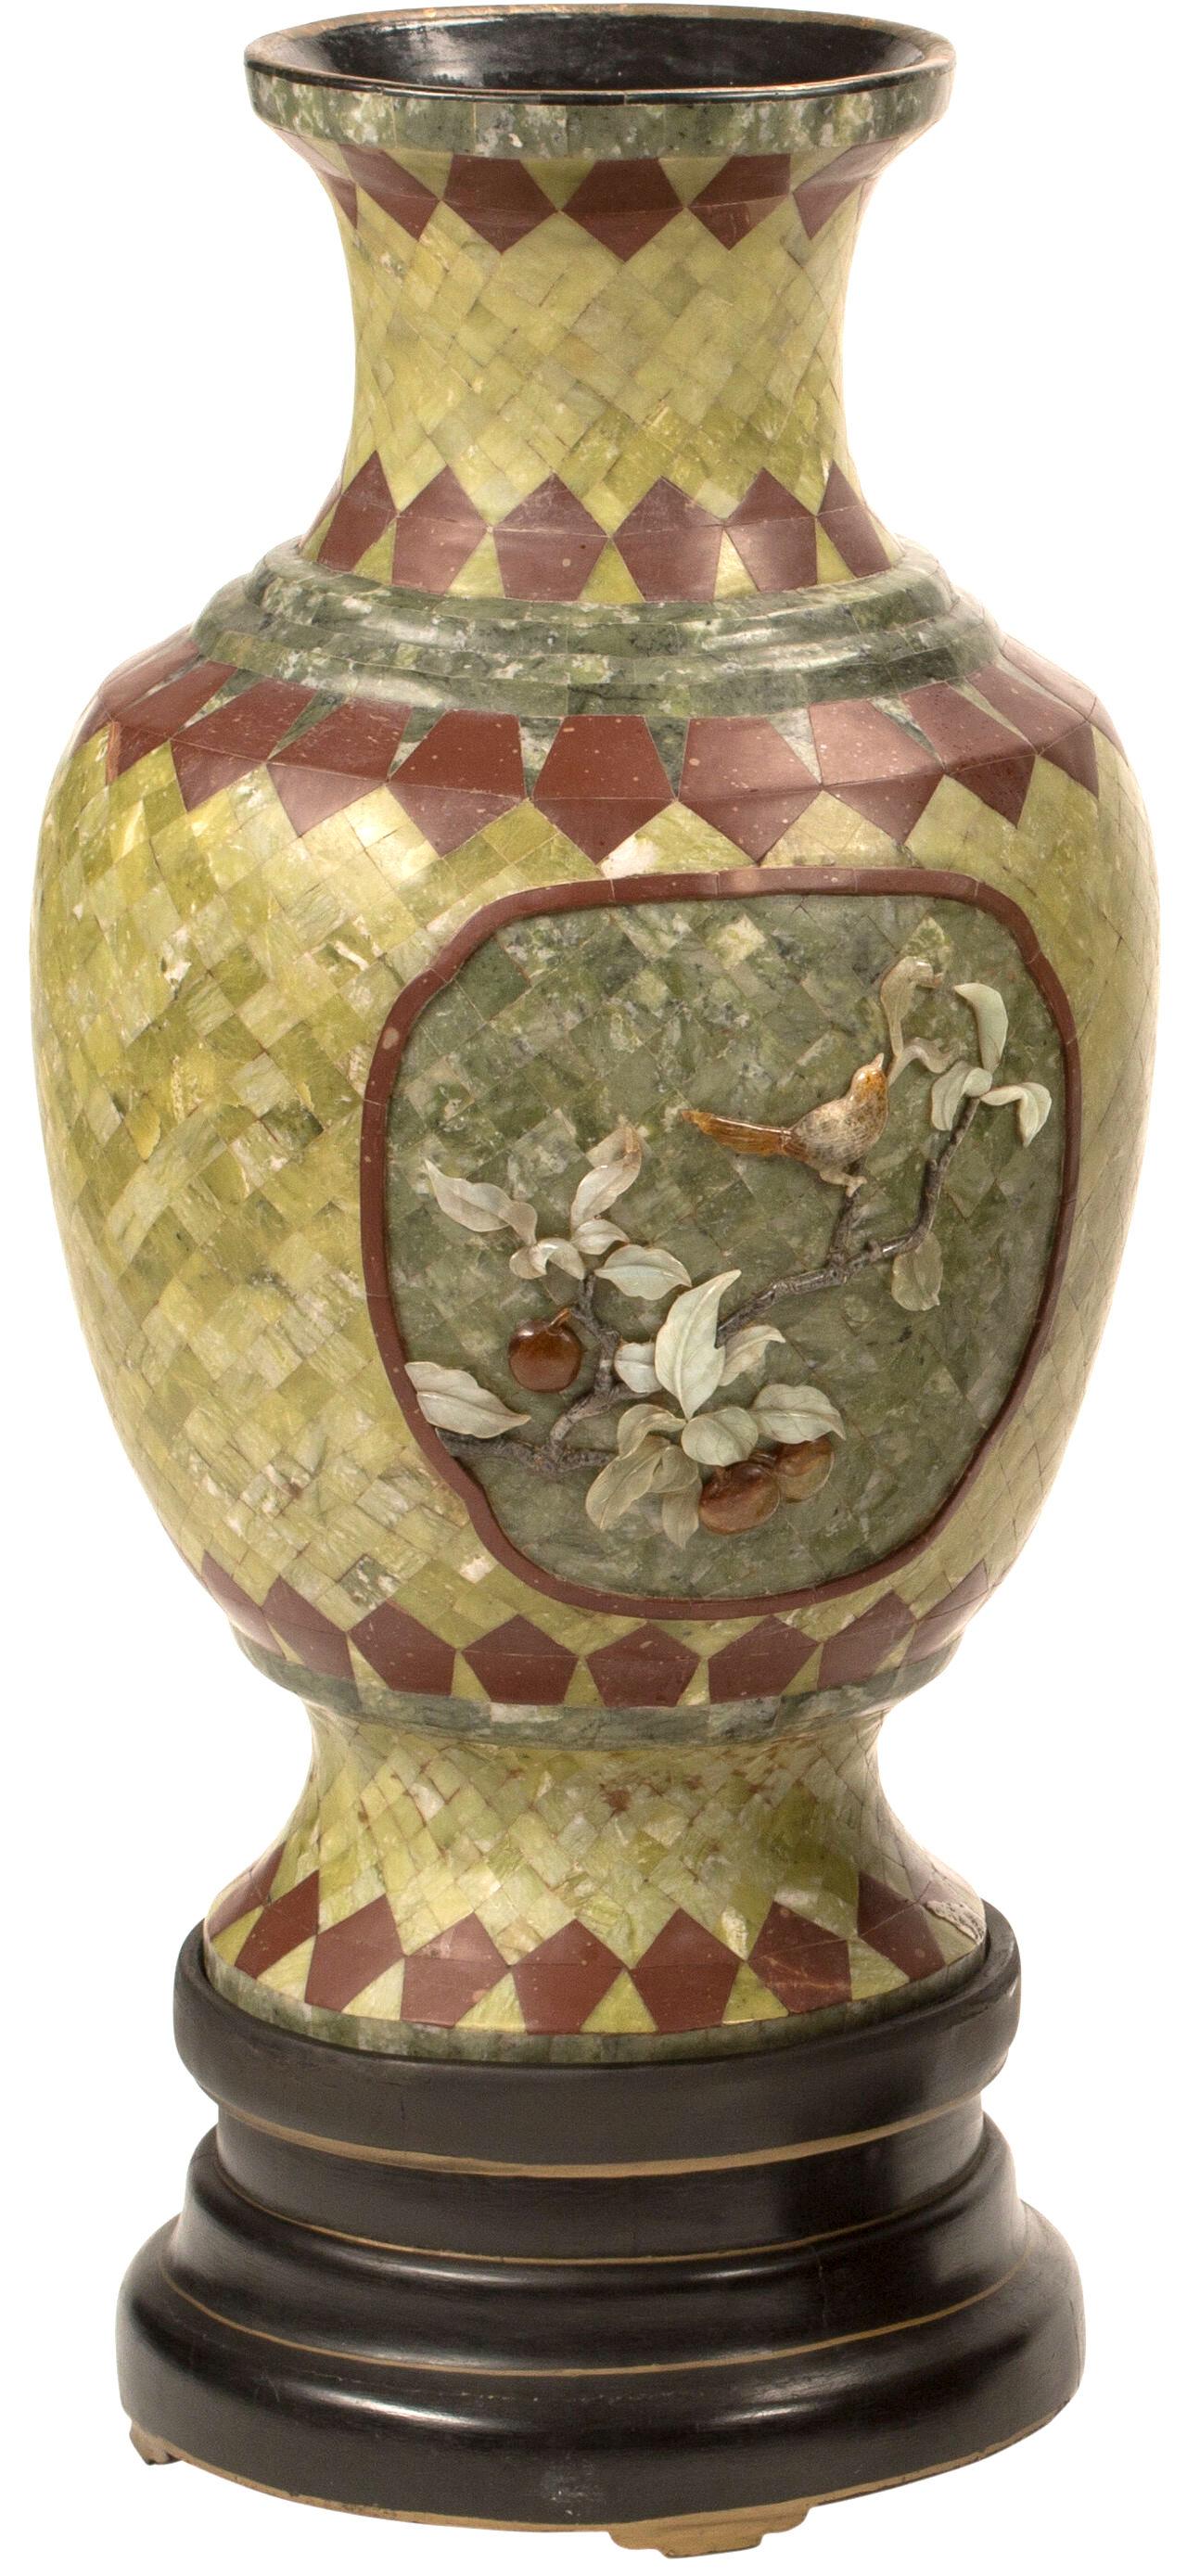 Paire de vases palatiaux chinois en placage de pierre dure avec cartouches en pierre dure représentant des oiseaux, des fleurs et des fruits, sur des socles ébénisés.